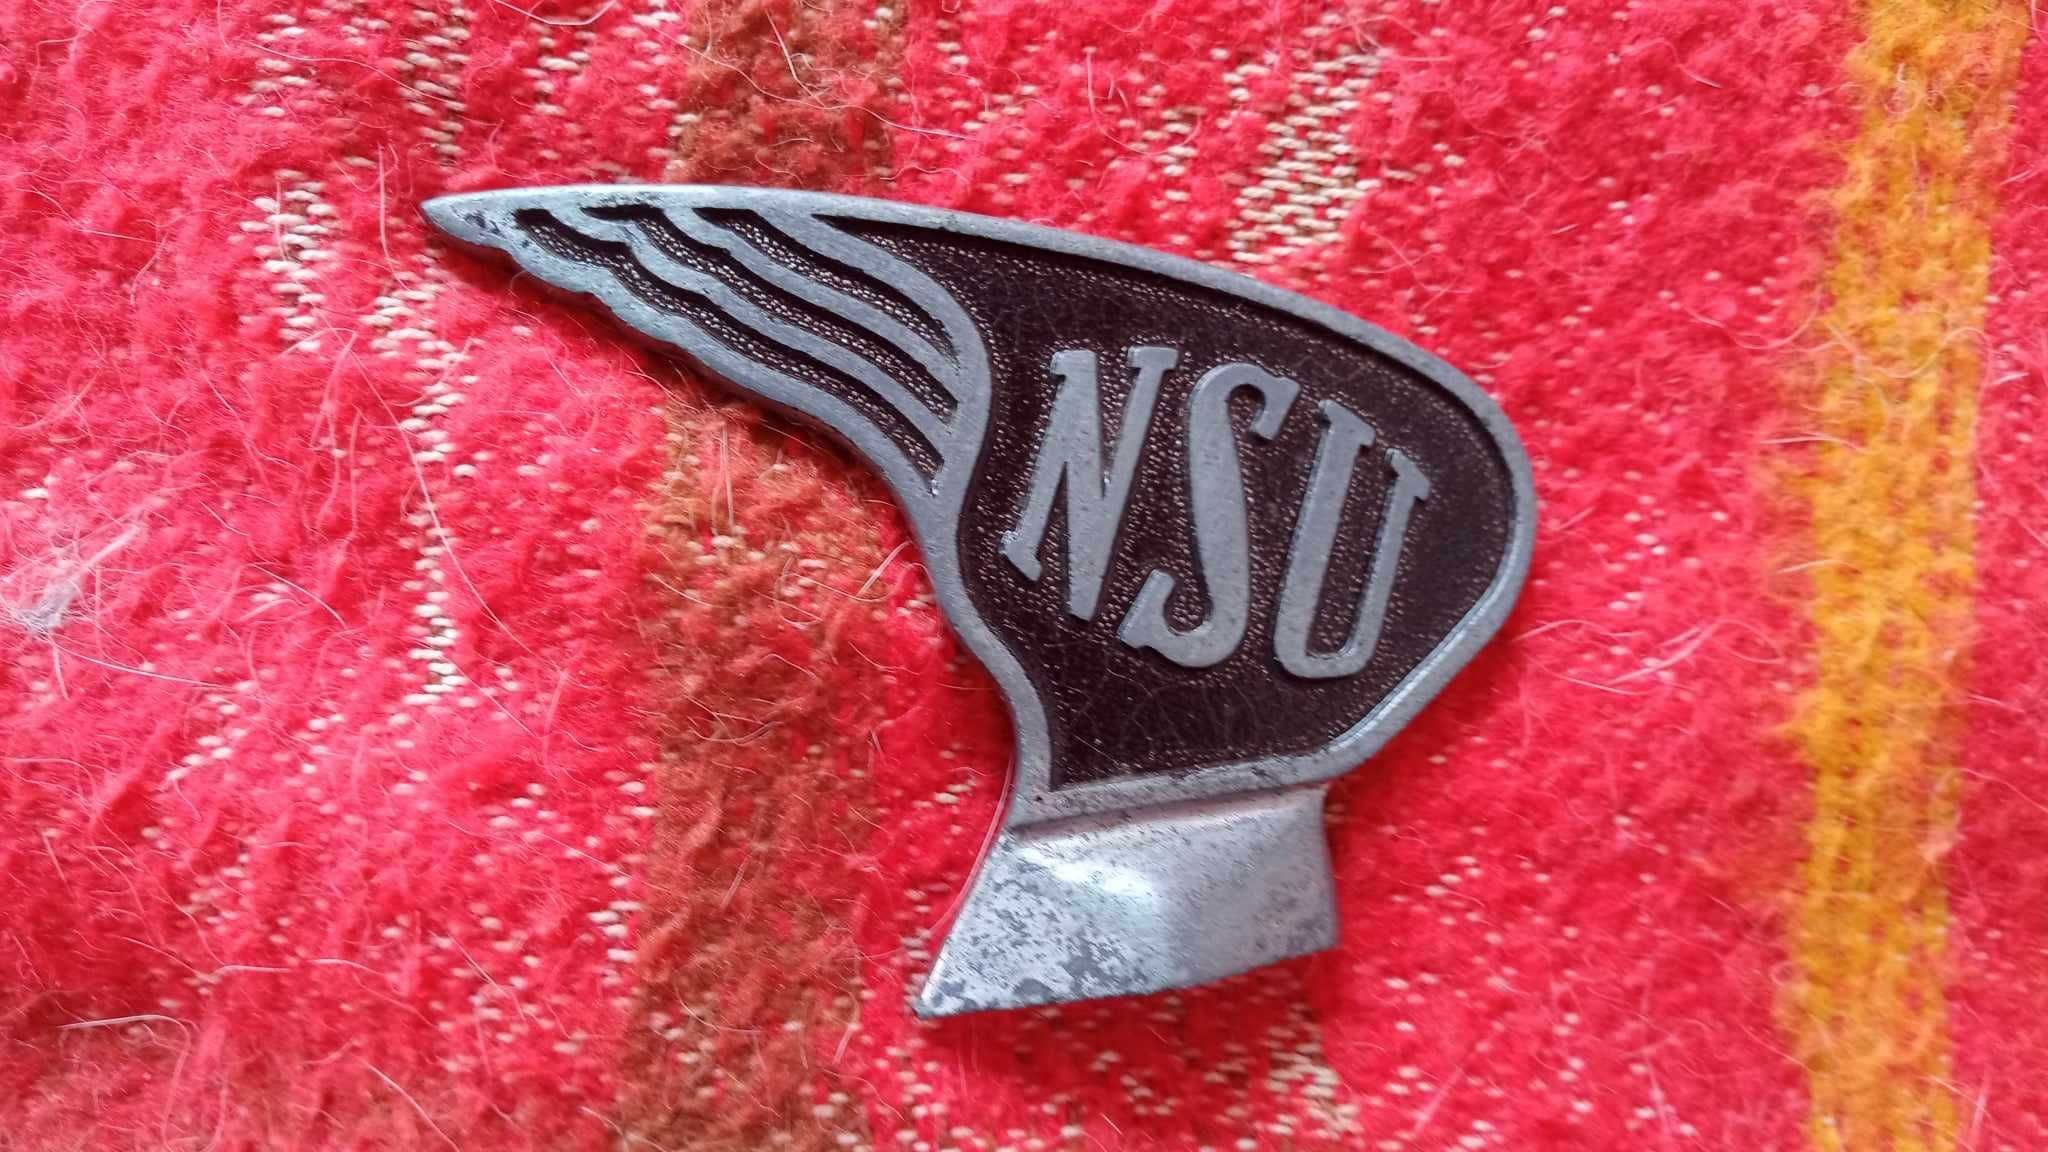 Stary emblemat znaczek NSU/rowerowy/motocyklowy/unikat.